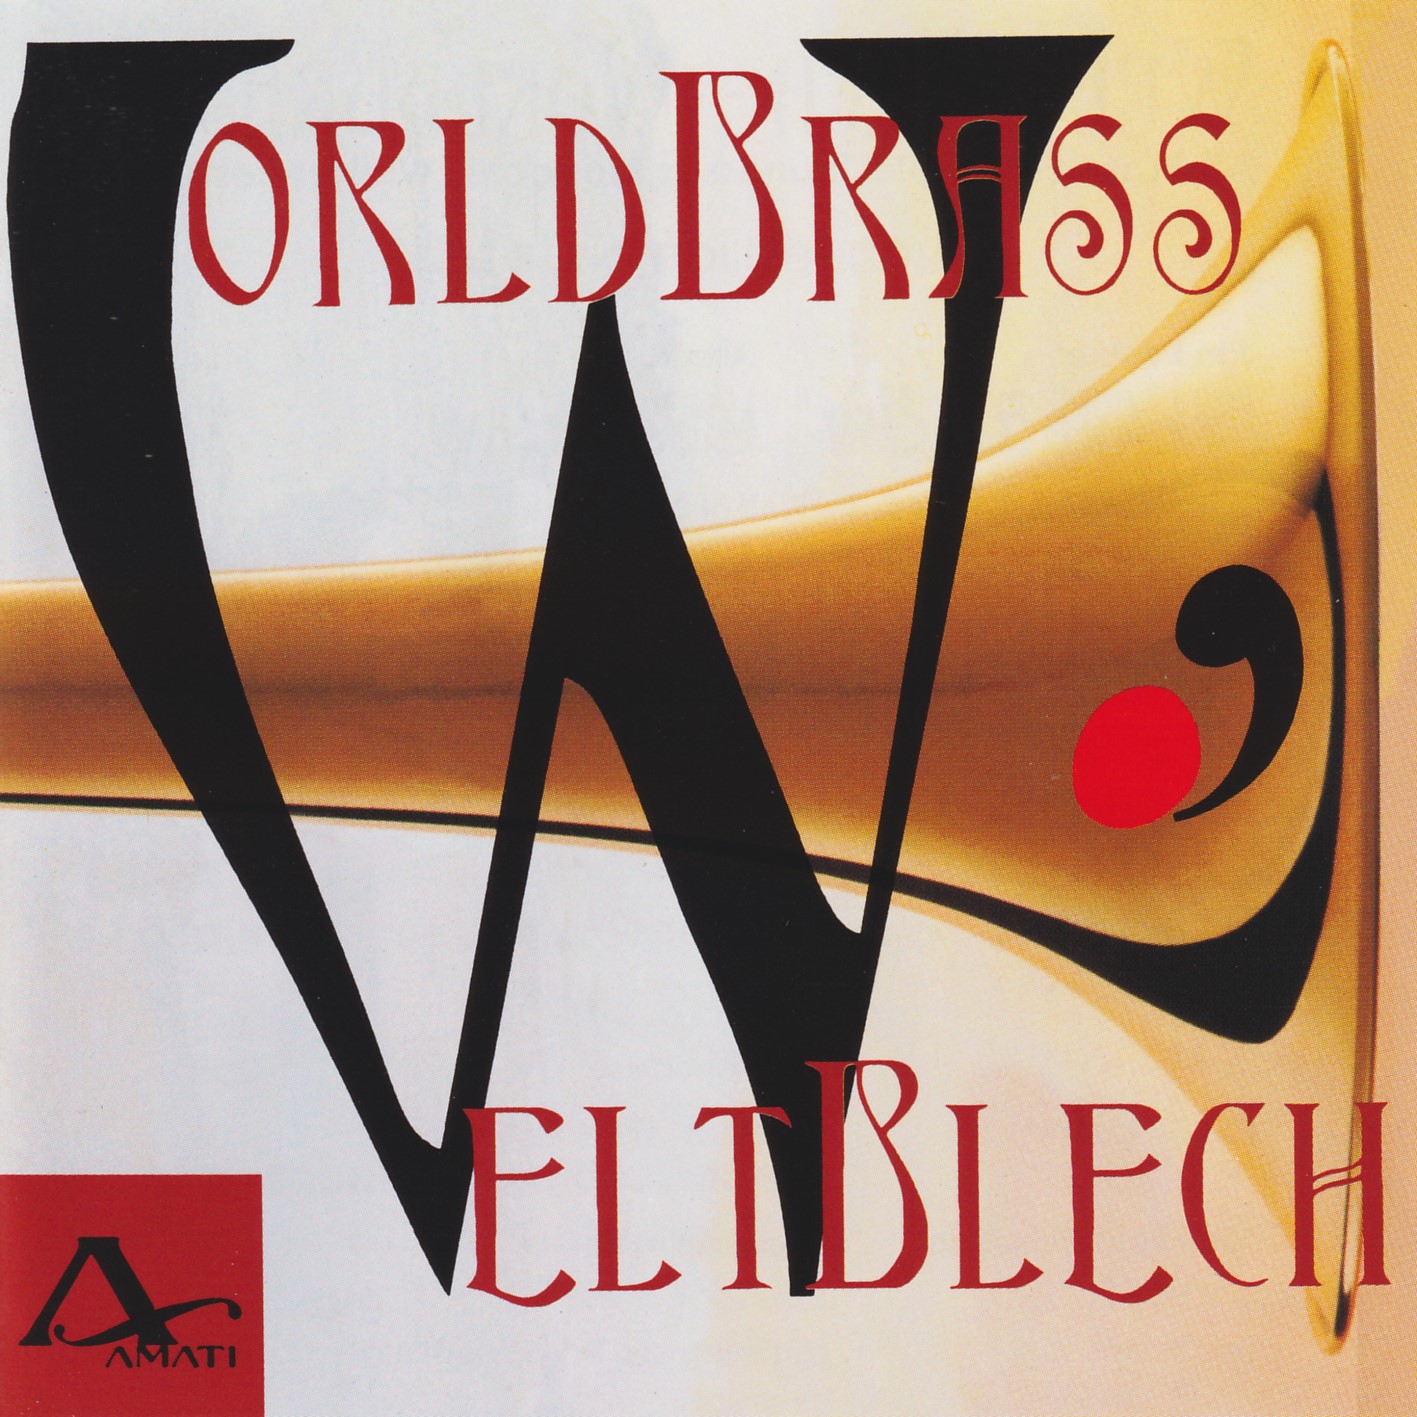 World Brass - Weltblech